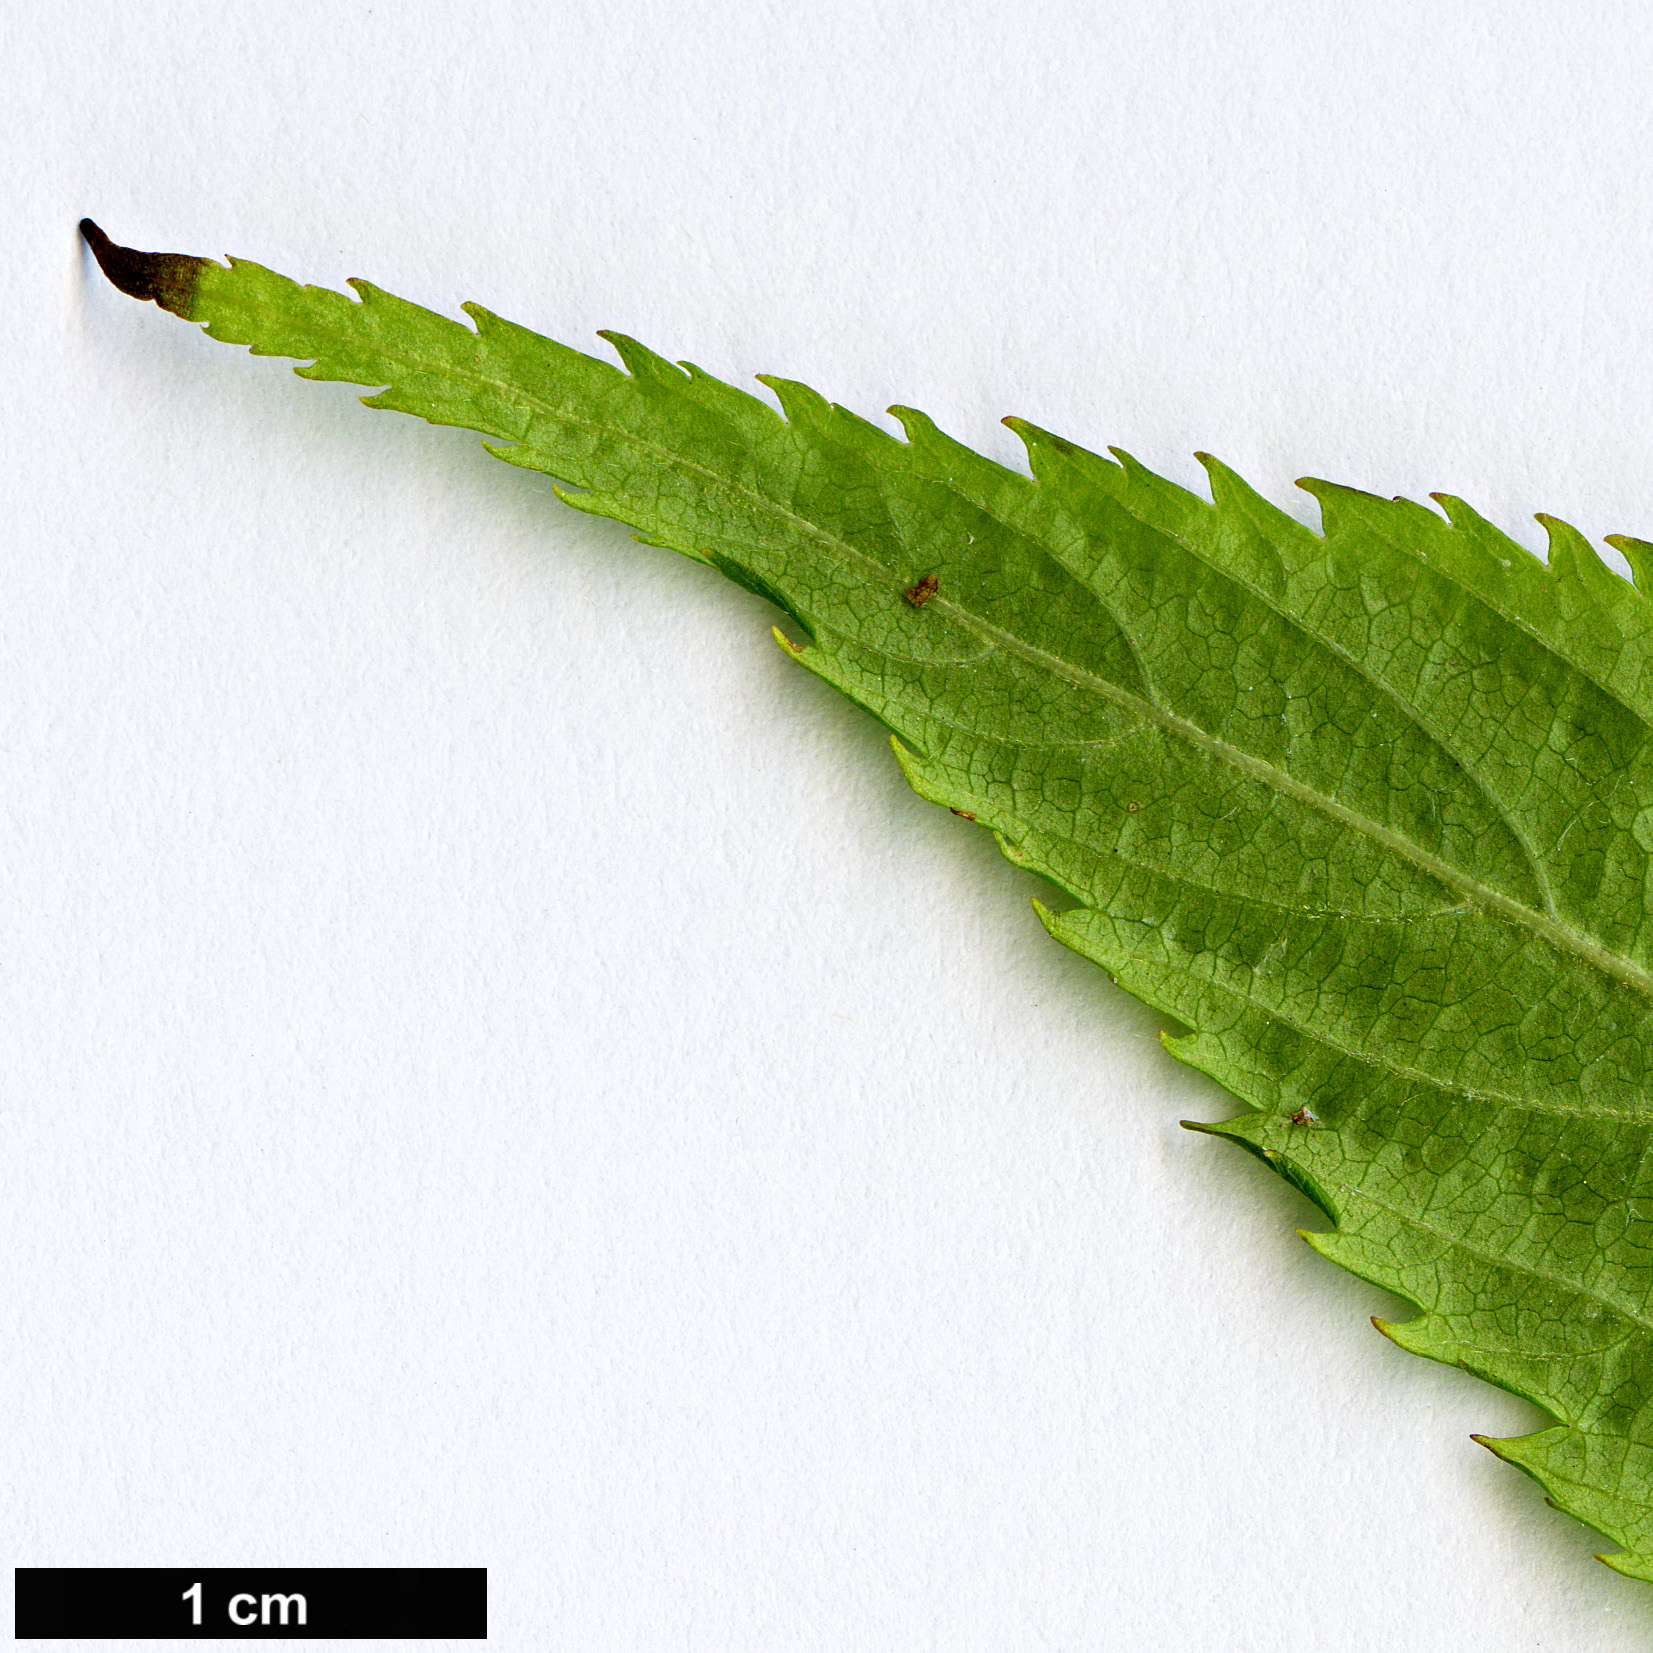 High resolution image: Family: Rosaceae - Genus: Rubus - Taxon: chingii - SpeciesSub: var. suavissimus